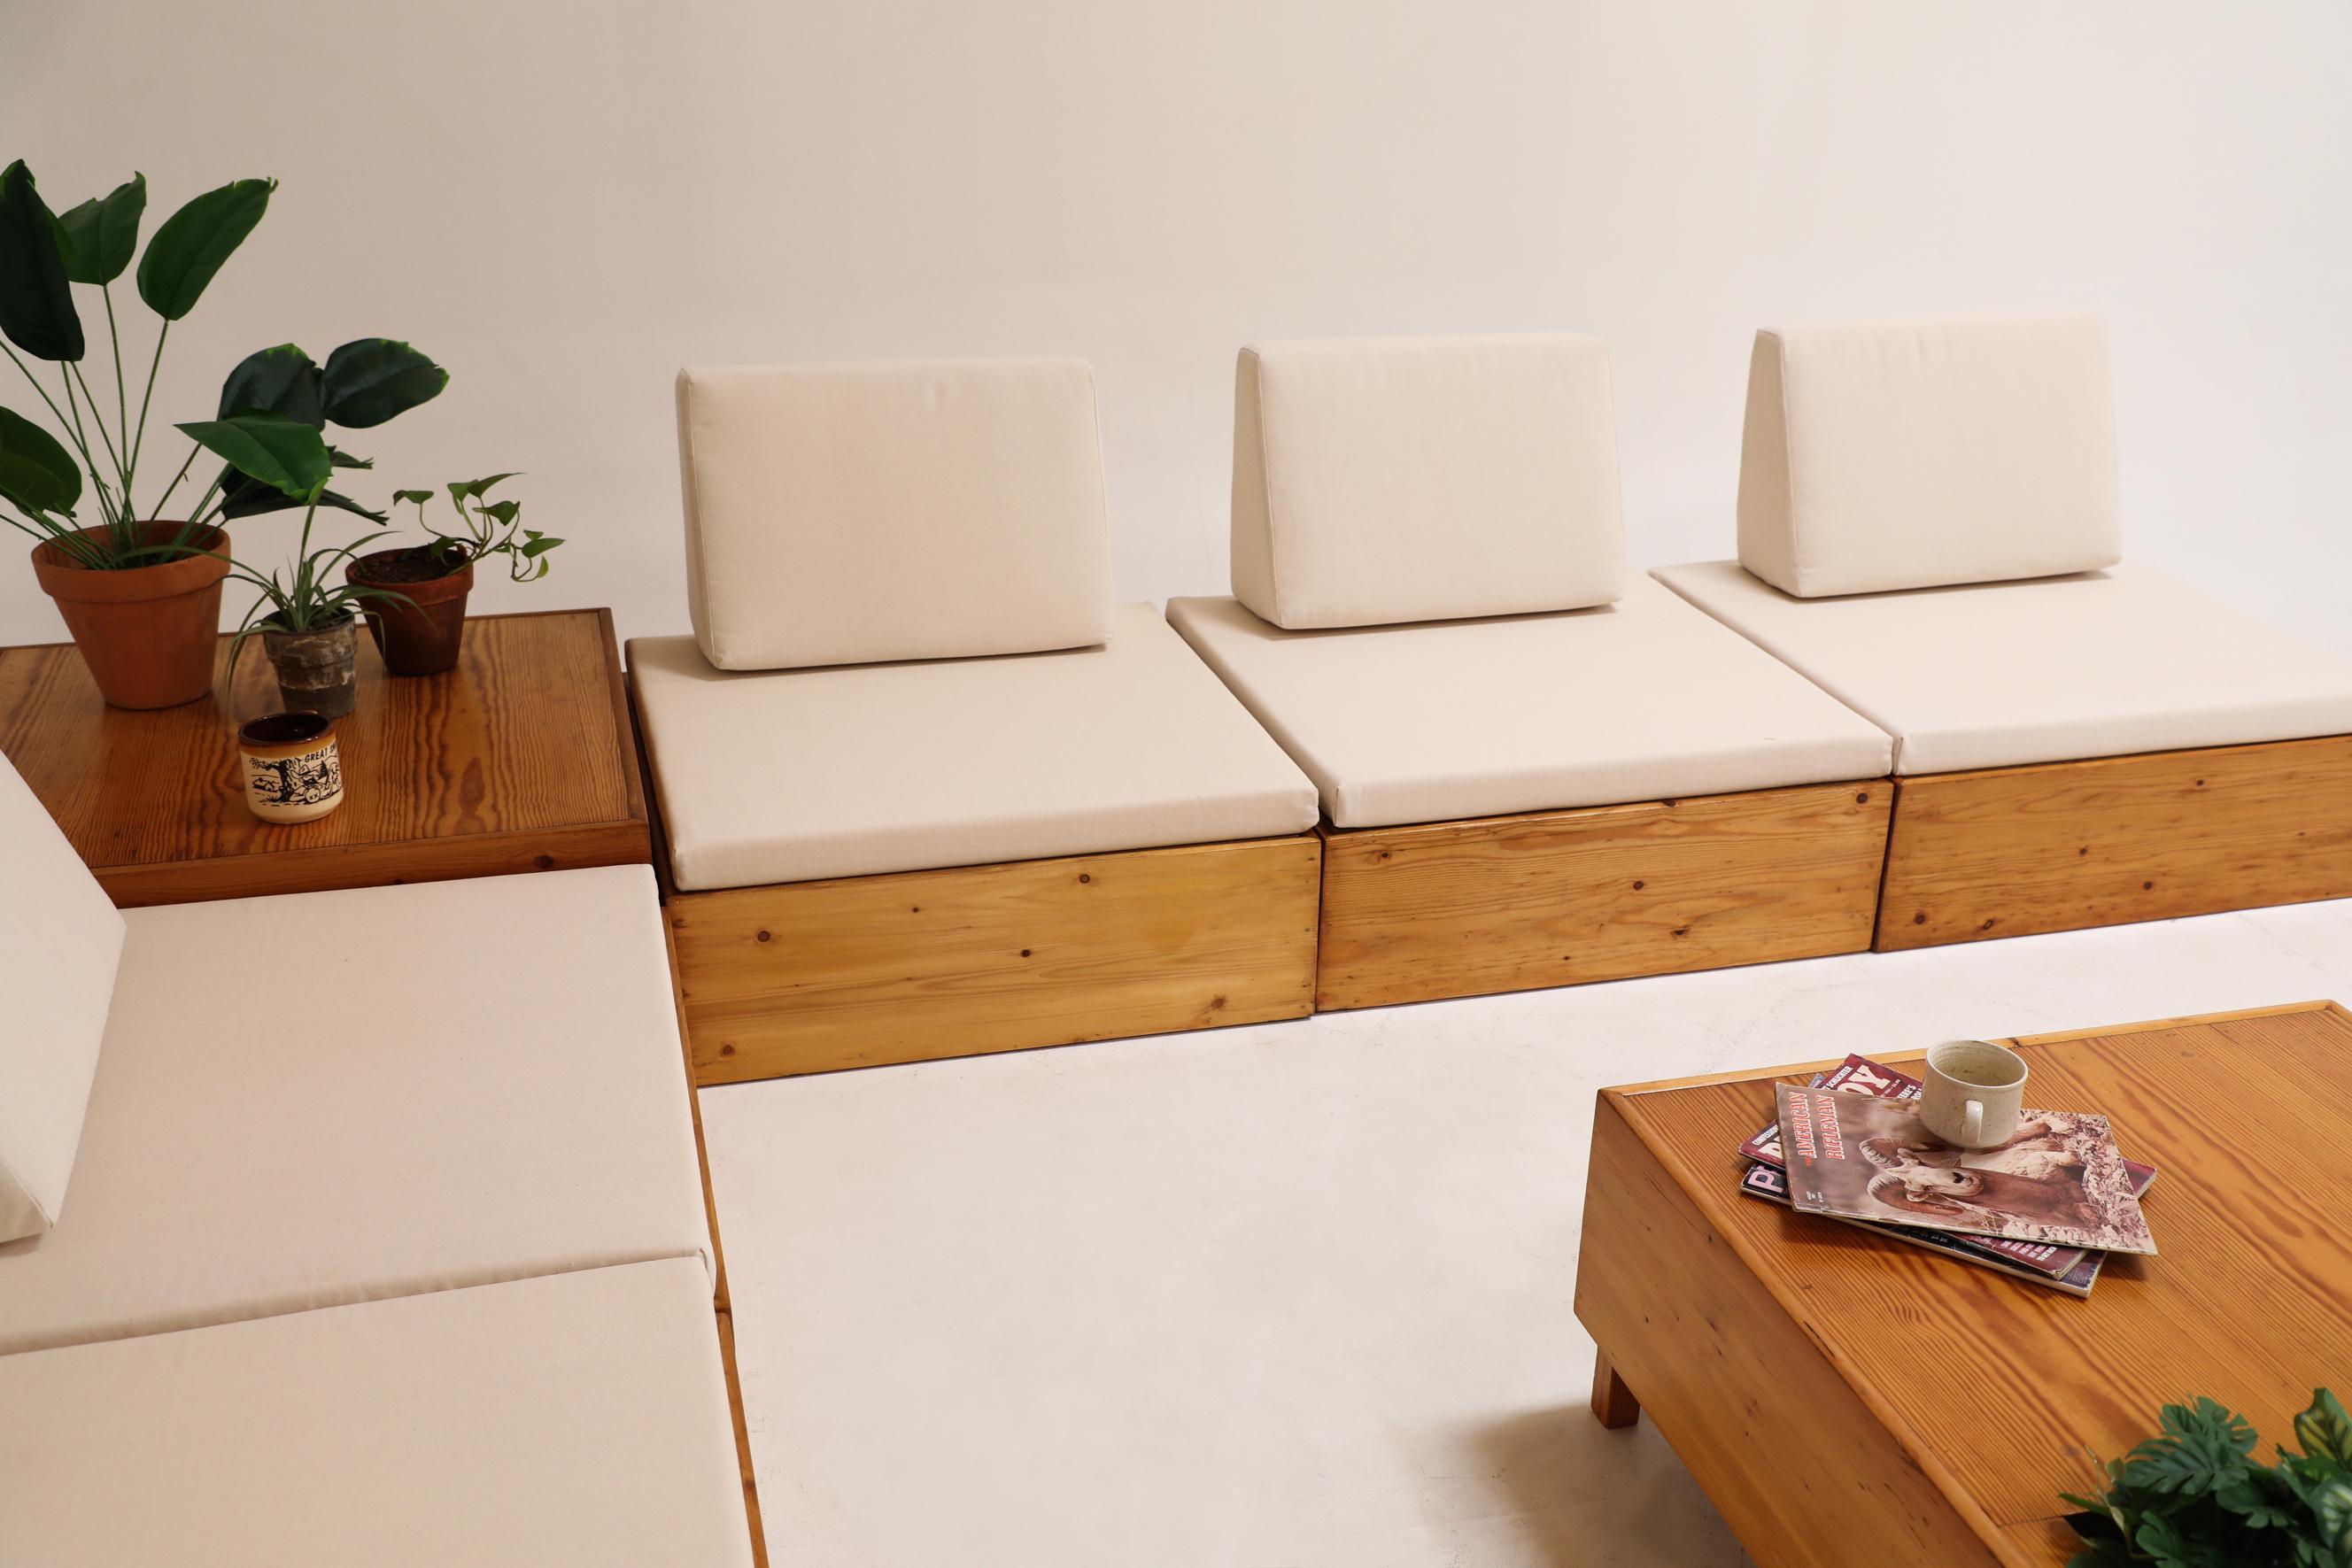 Ate Van Apeldoorn inspiriertes Kiefernholz-Sofa-Set mit neuen Sitzmöbeln aus Segeltuch (Stoff)